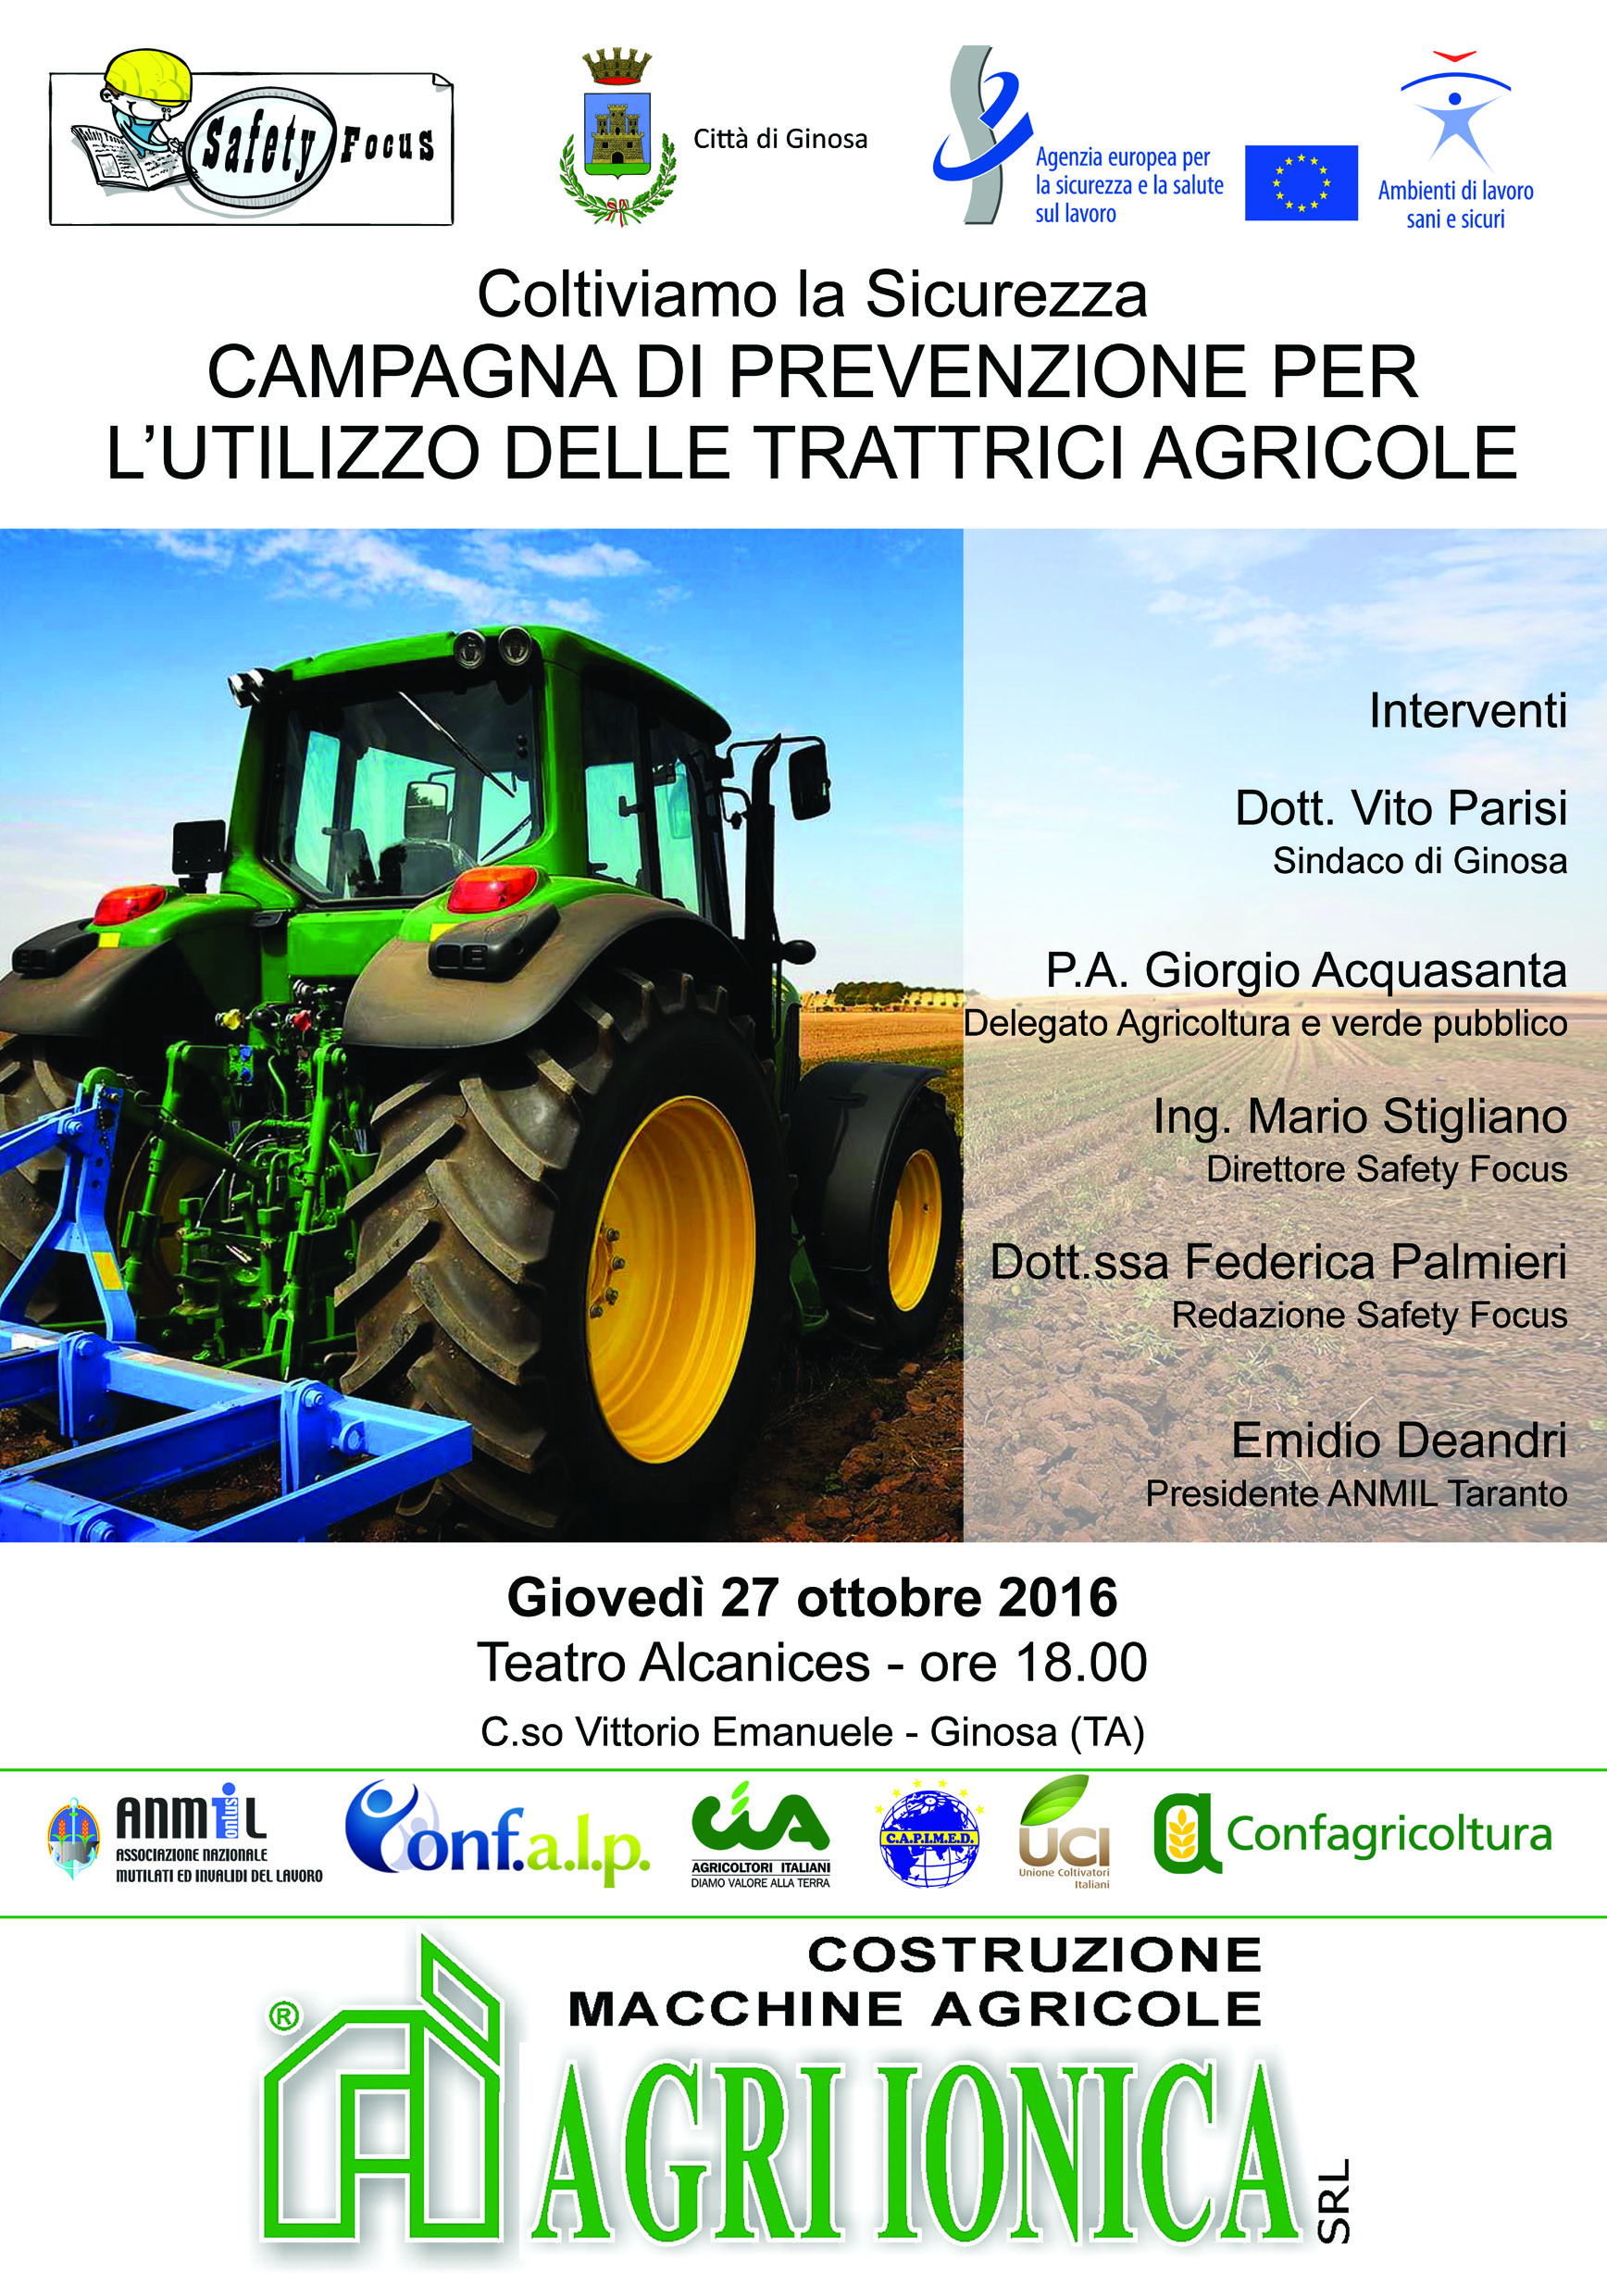 Settimana europea per la salute e sicurezza sul lavoro, a Ginosa si parla di prevenzione nell’uso delle trattrici agricole